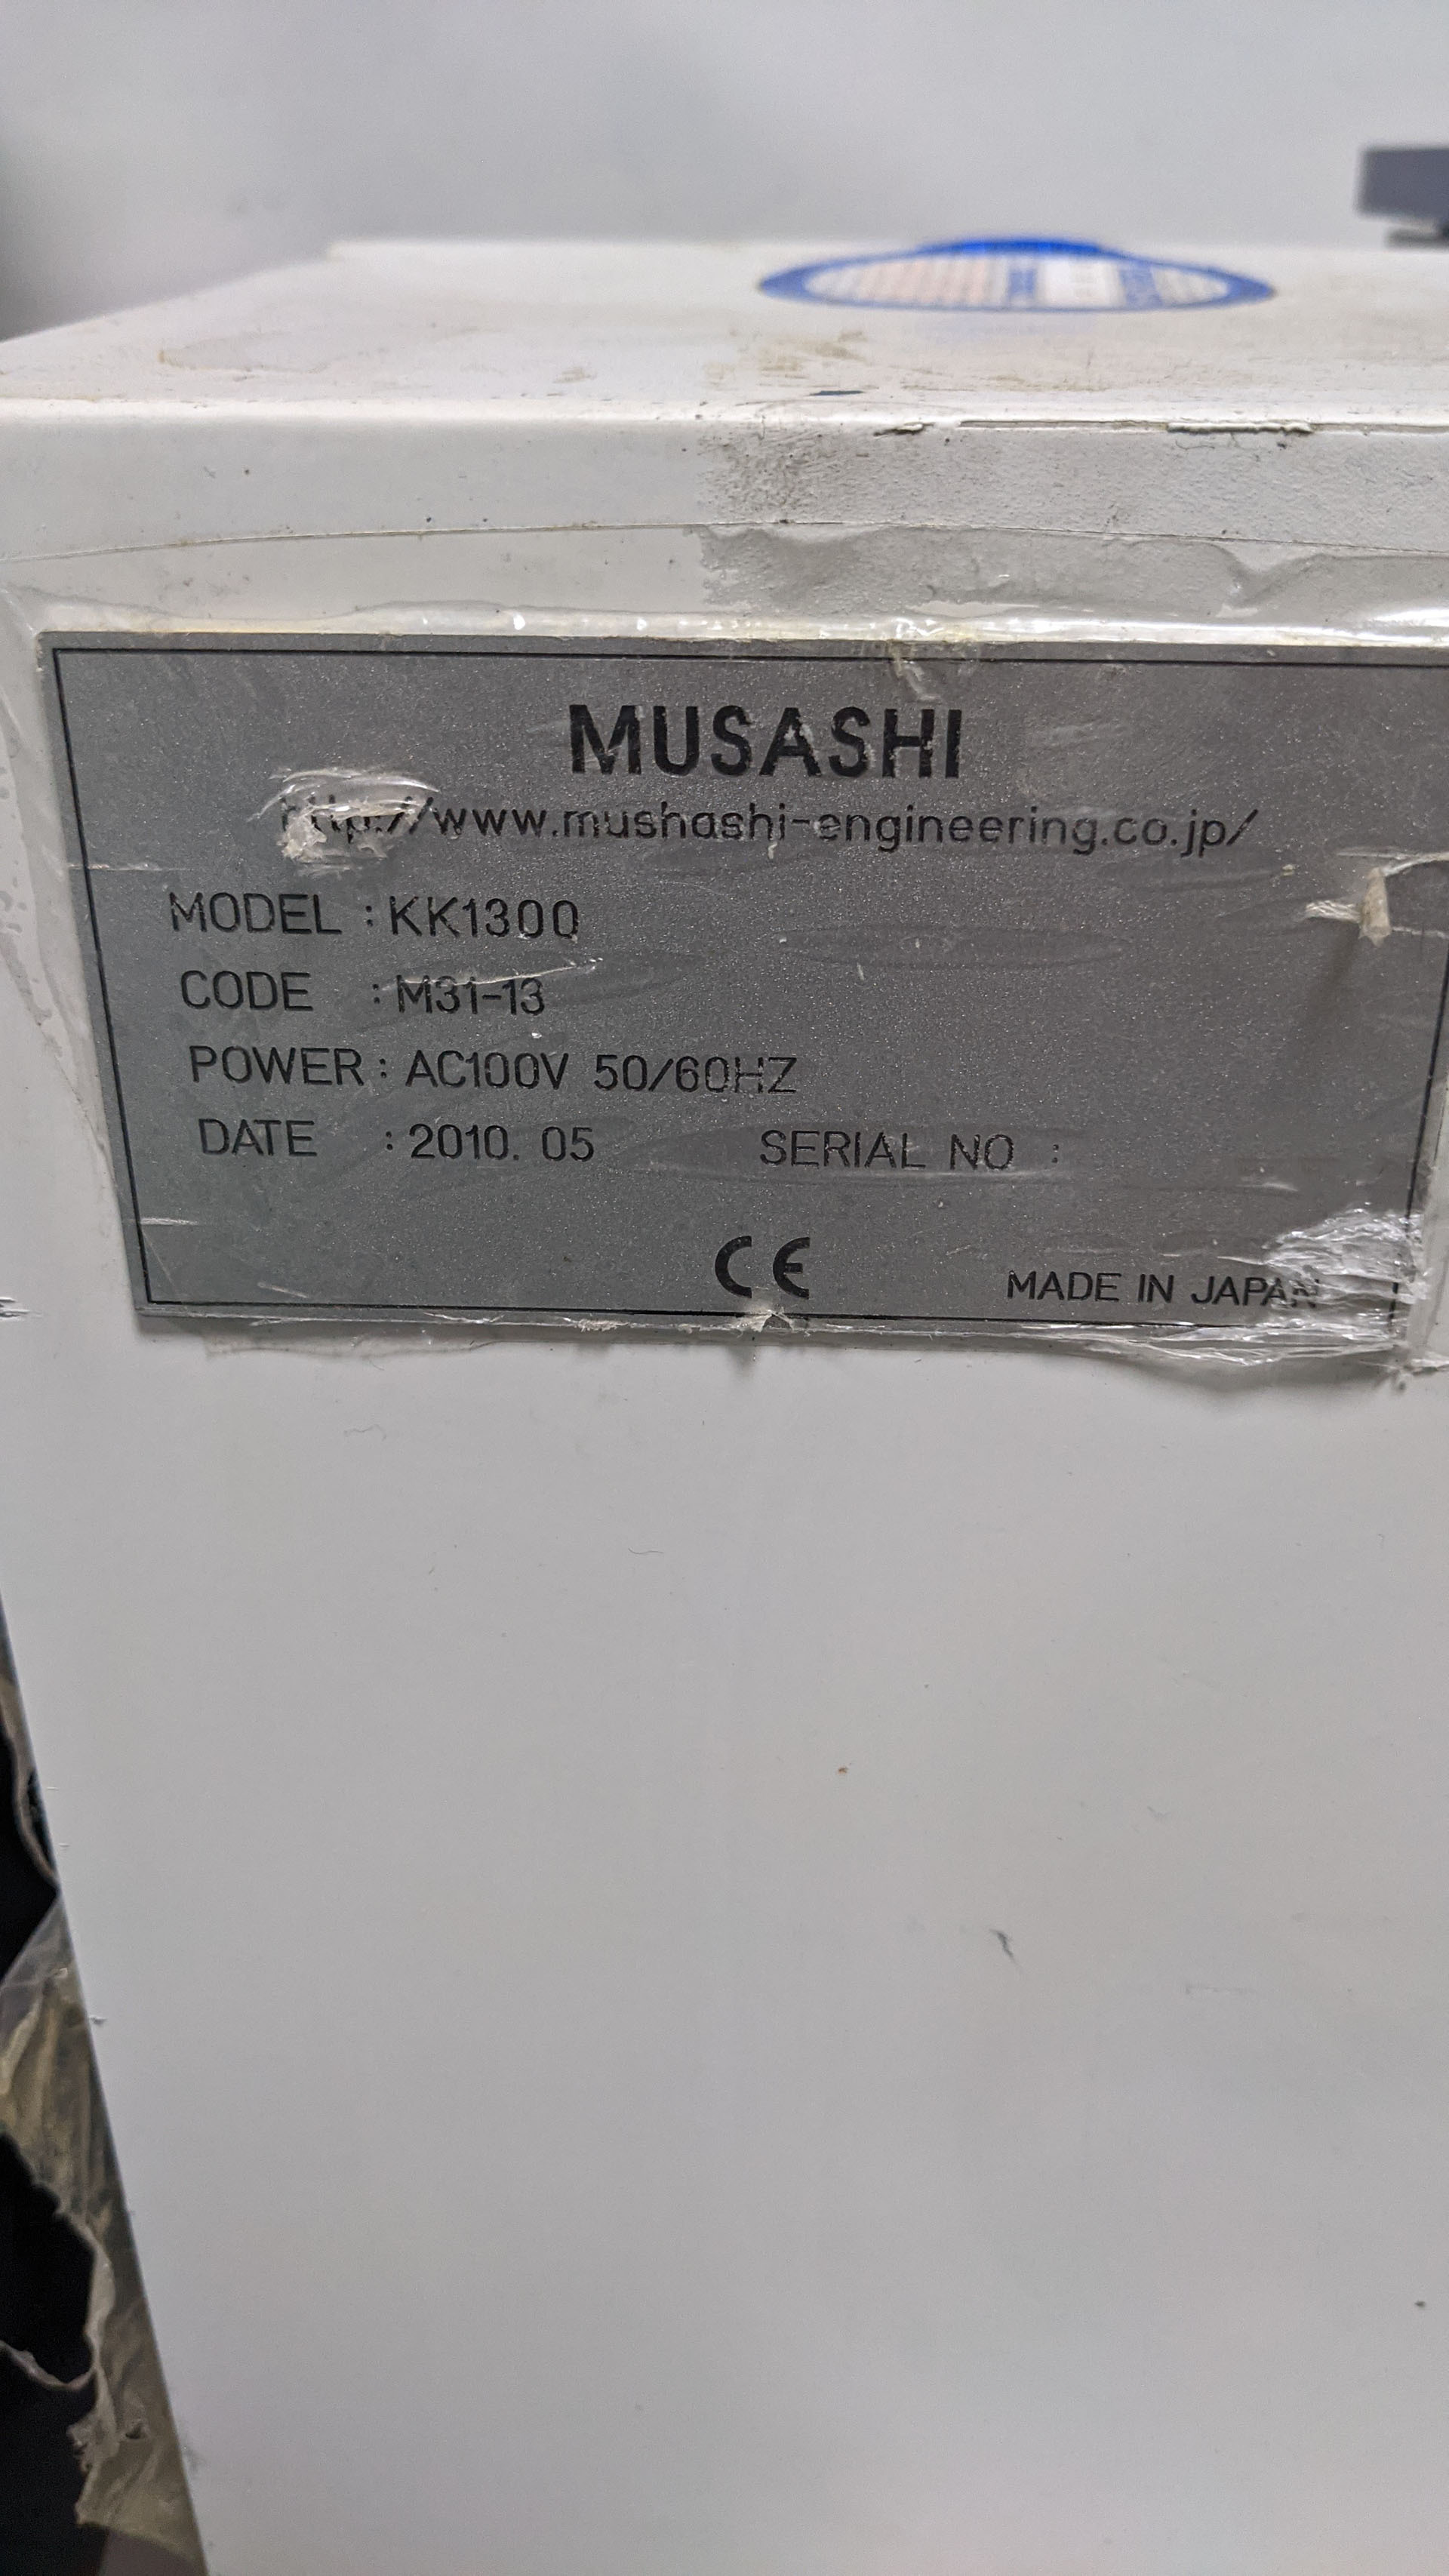 사진 사용됨 MUSASHI ENGINEERING AW-MV310 판매용